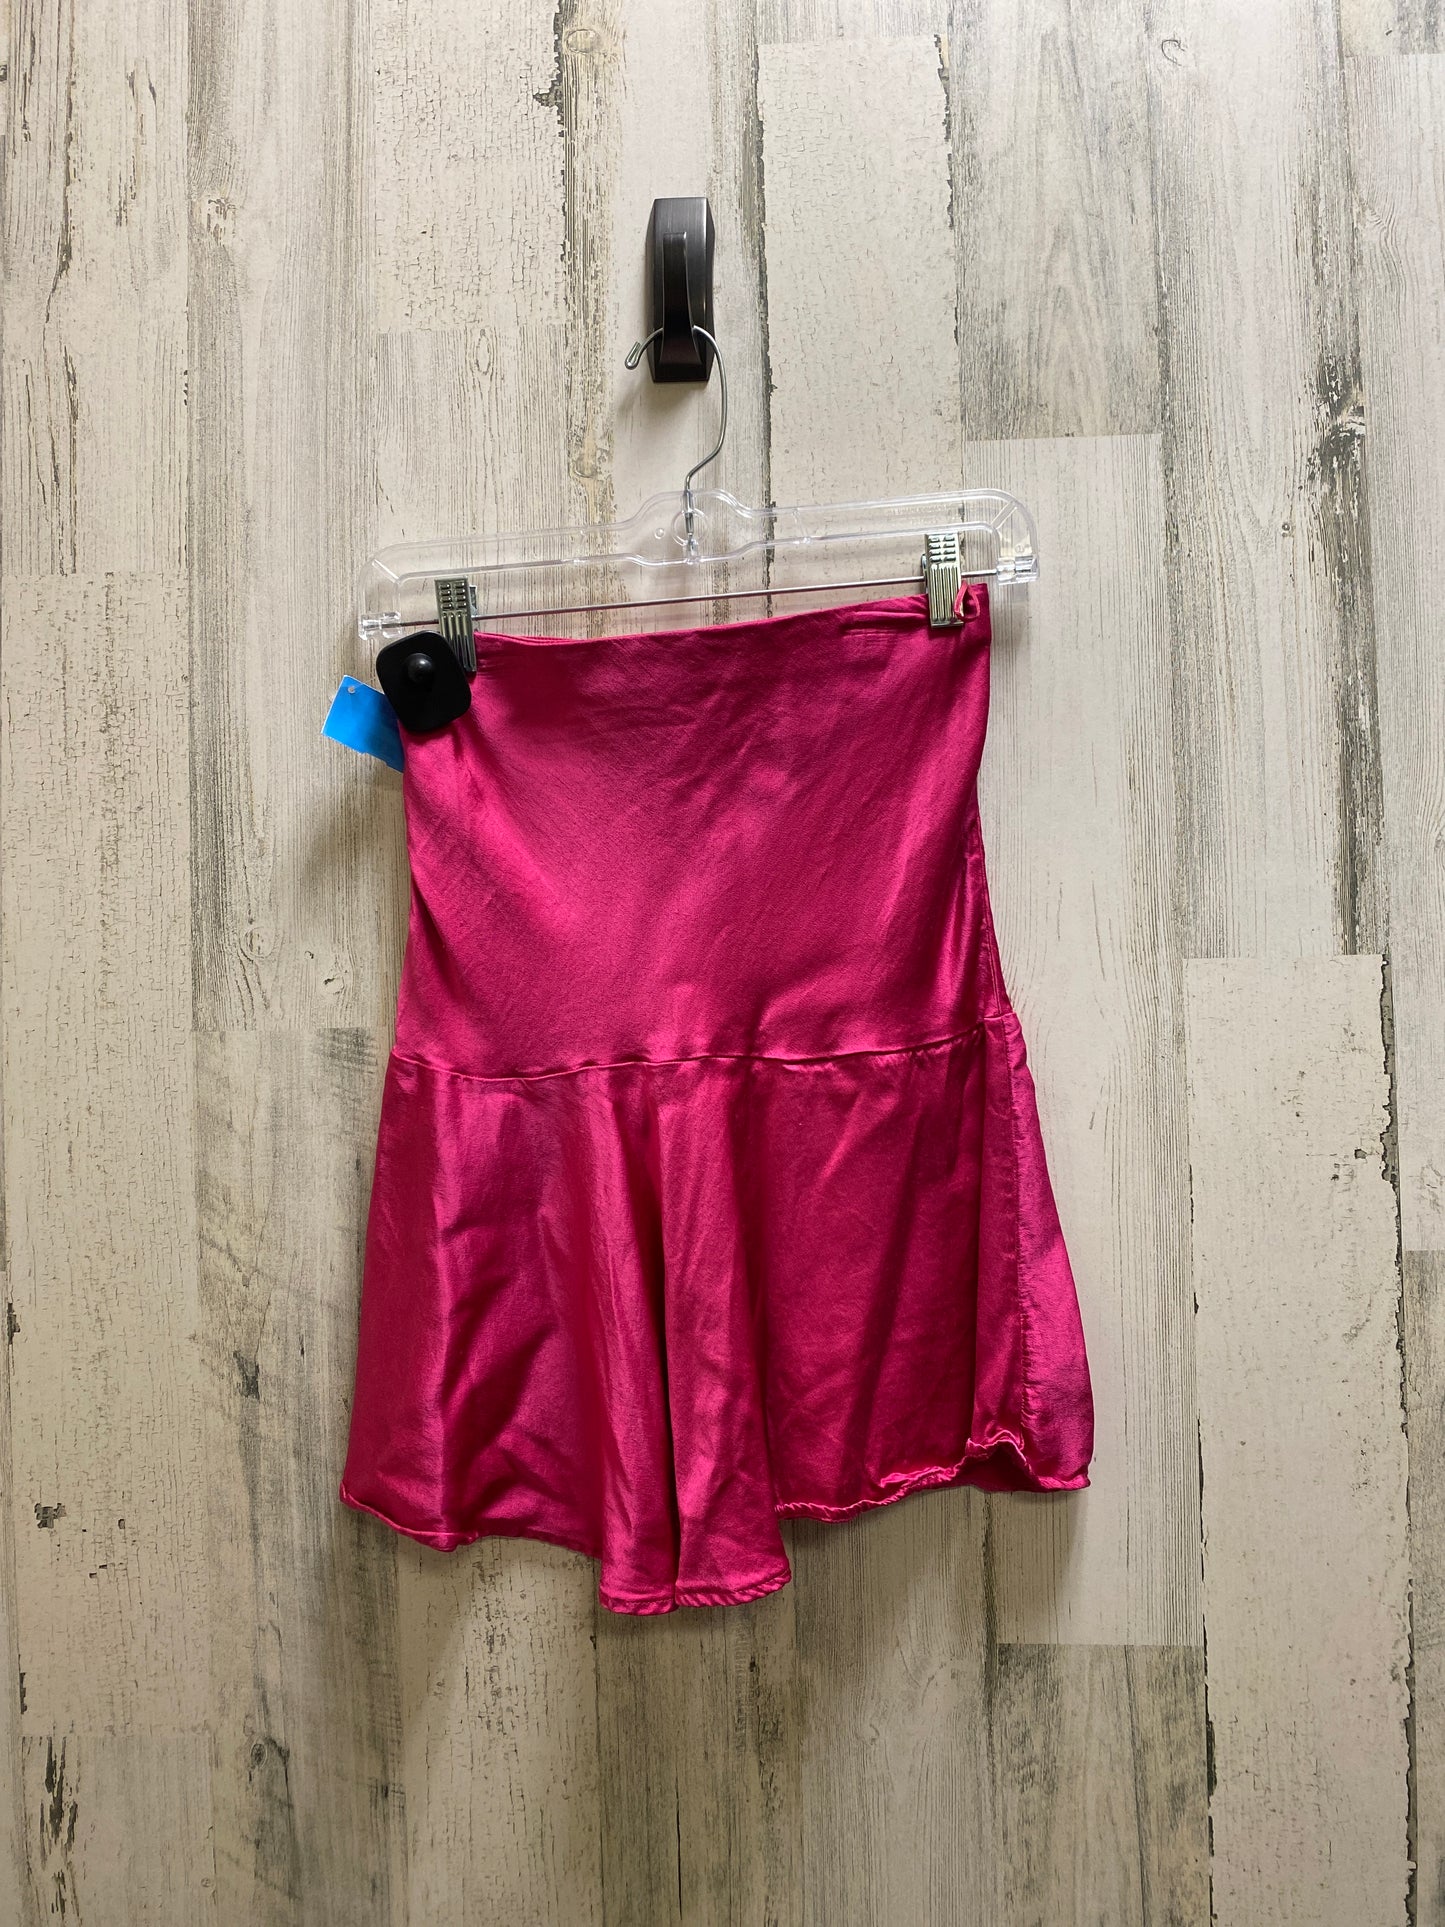 Skirt Midi By Zara  Size: Xs